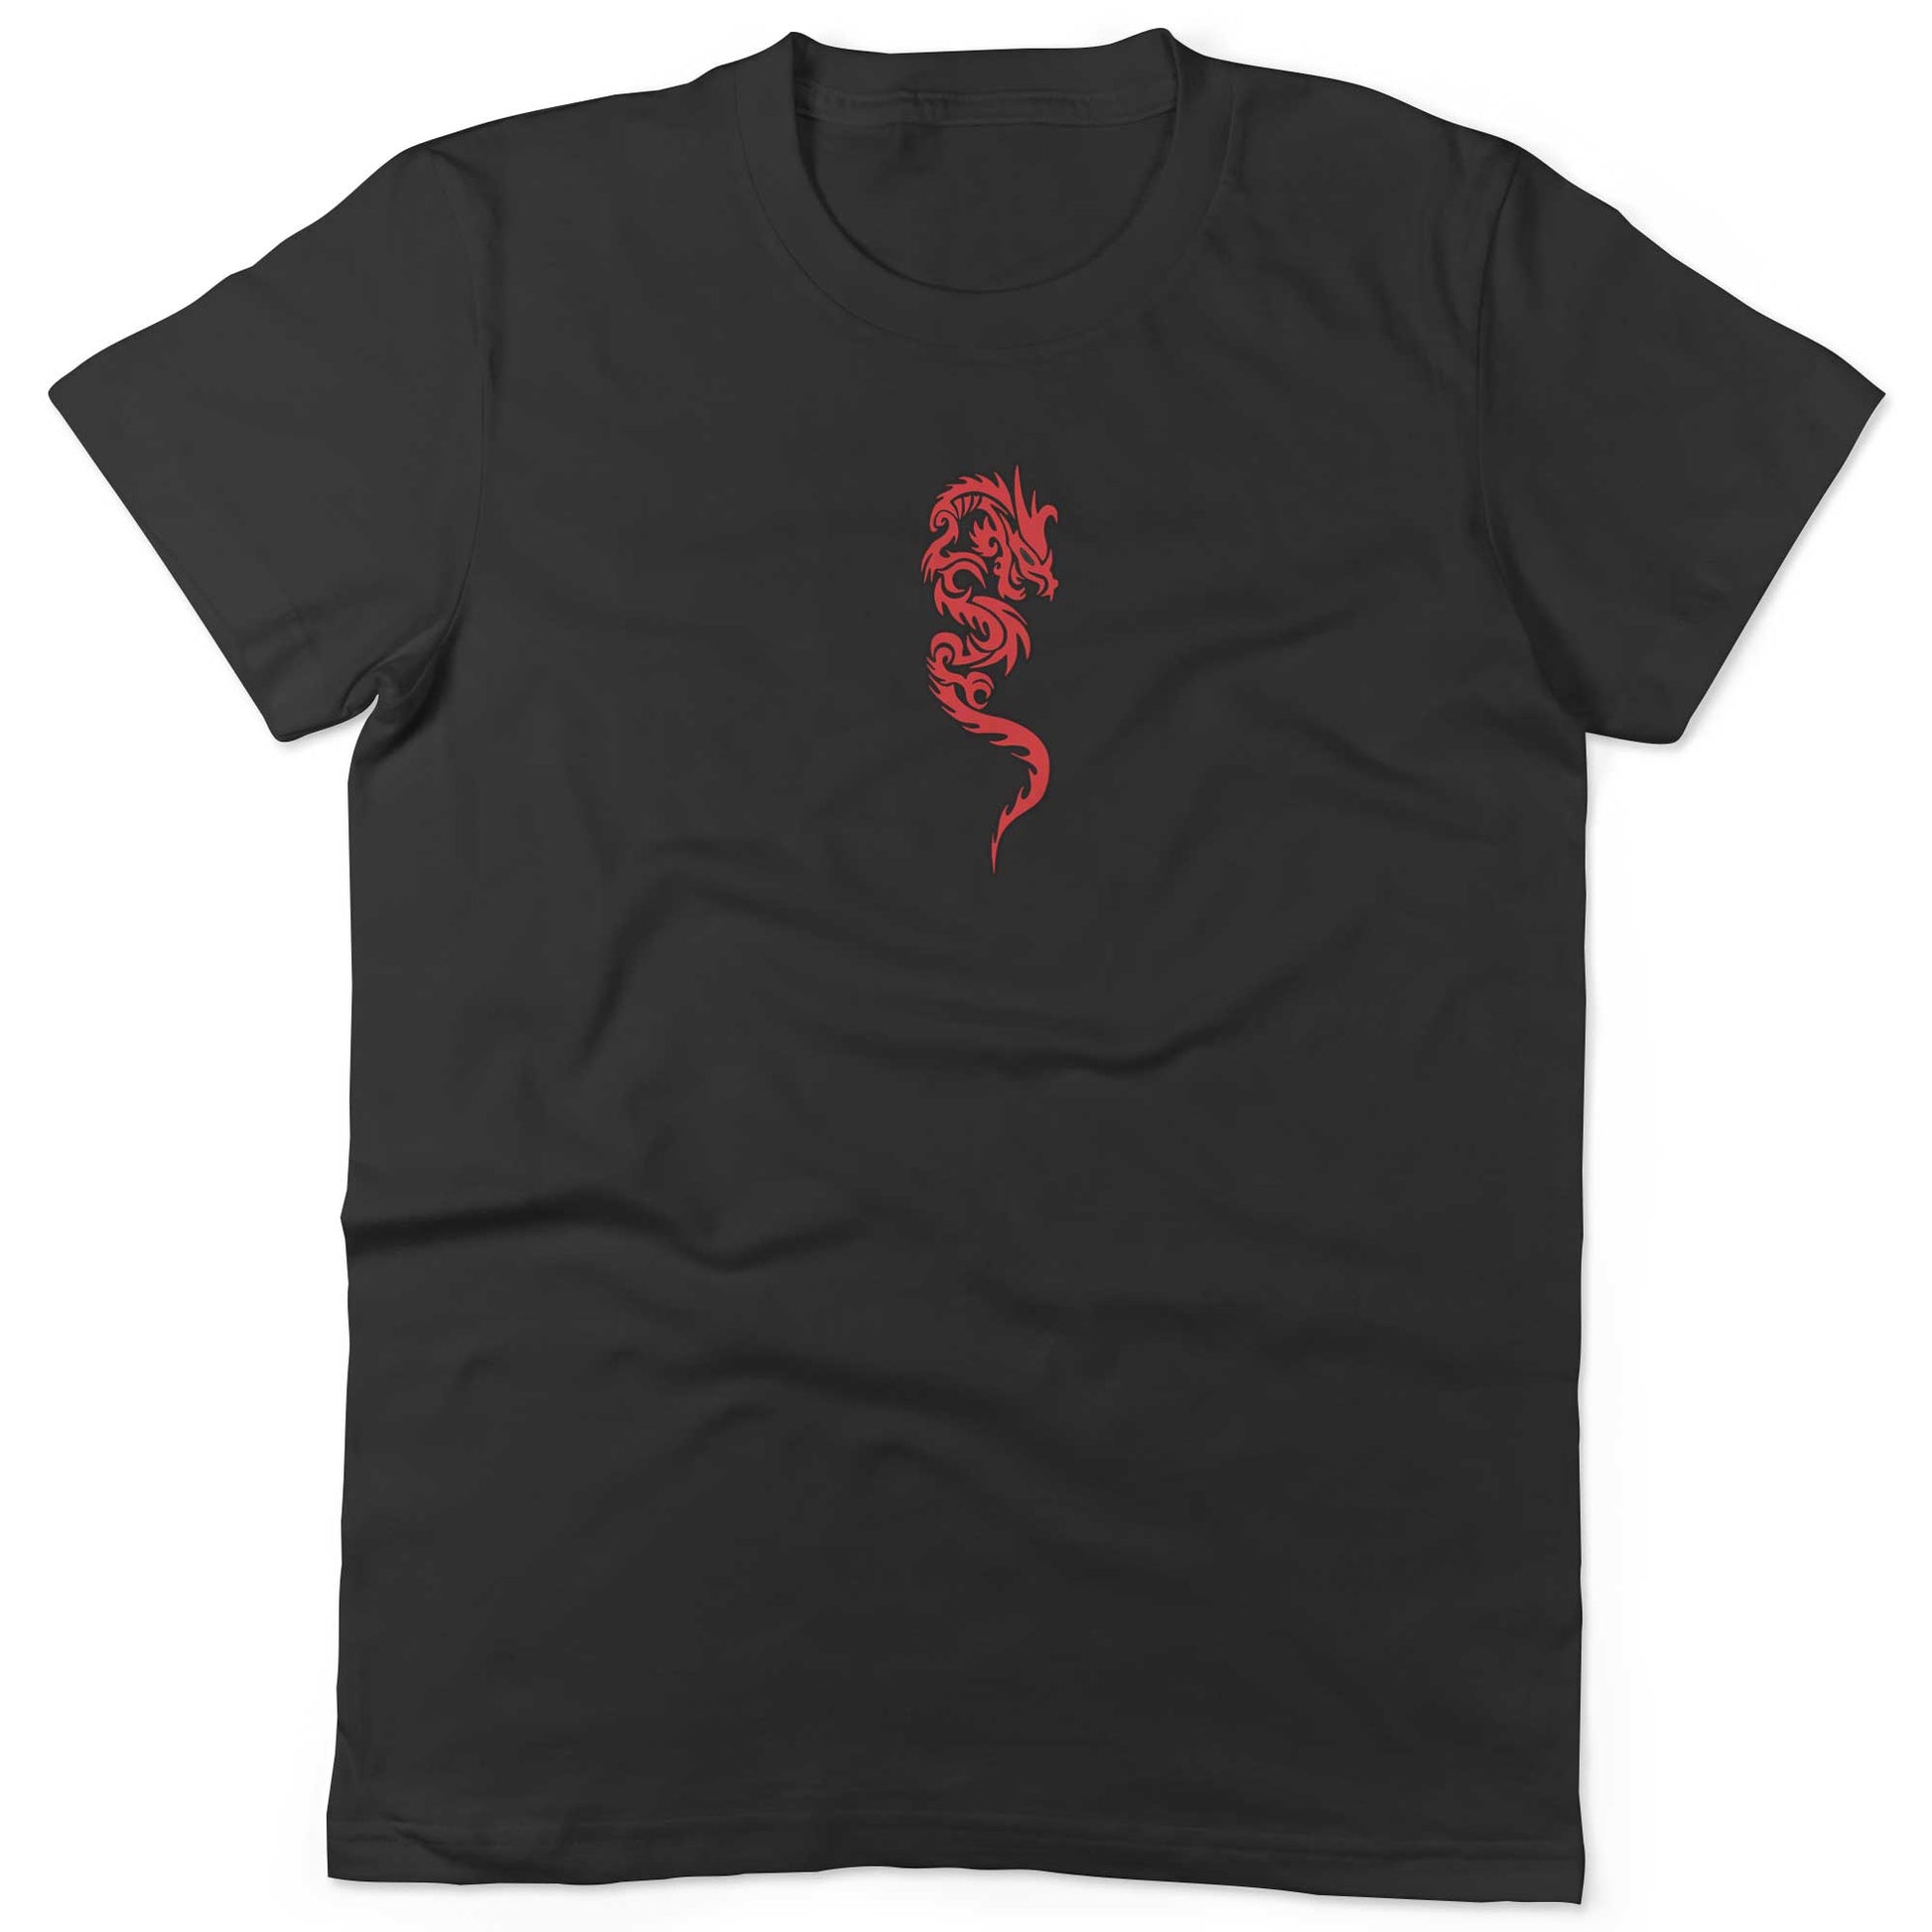 Martial Arts Unisex Or Women's Cotton T-shirt-Black-Woman